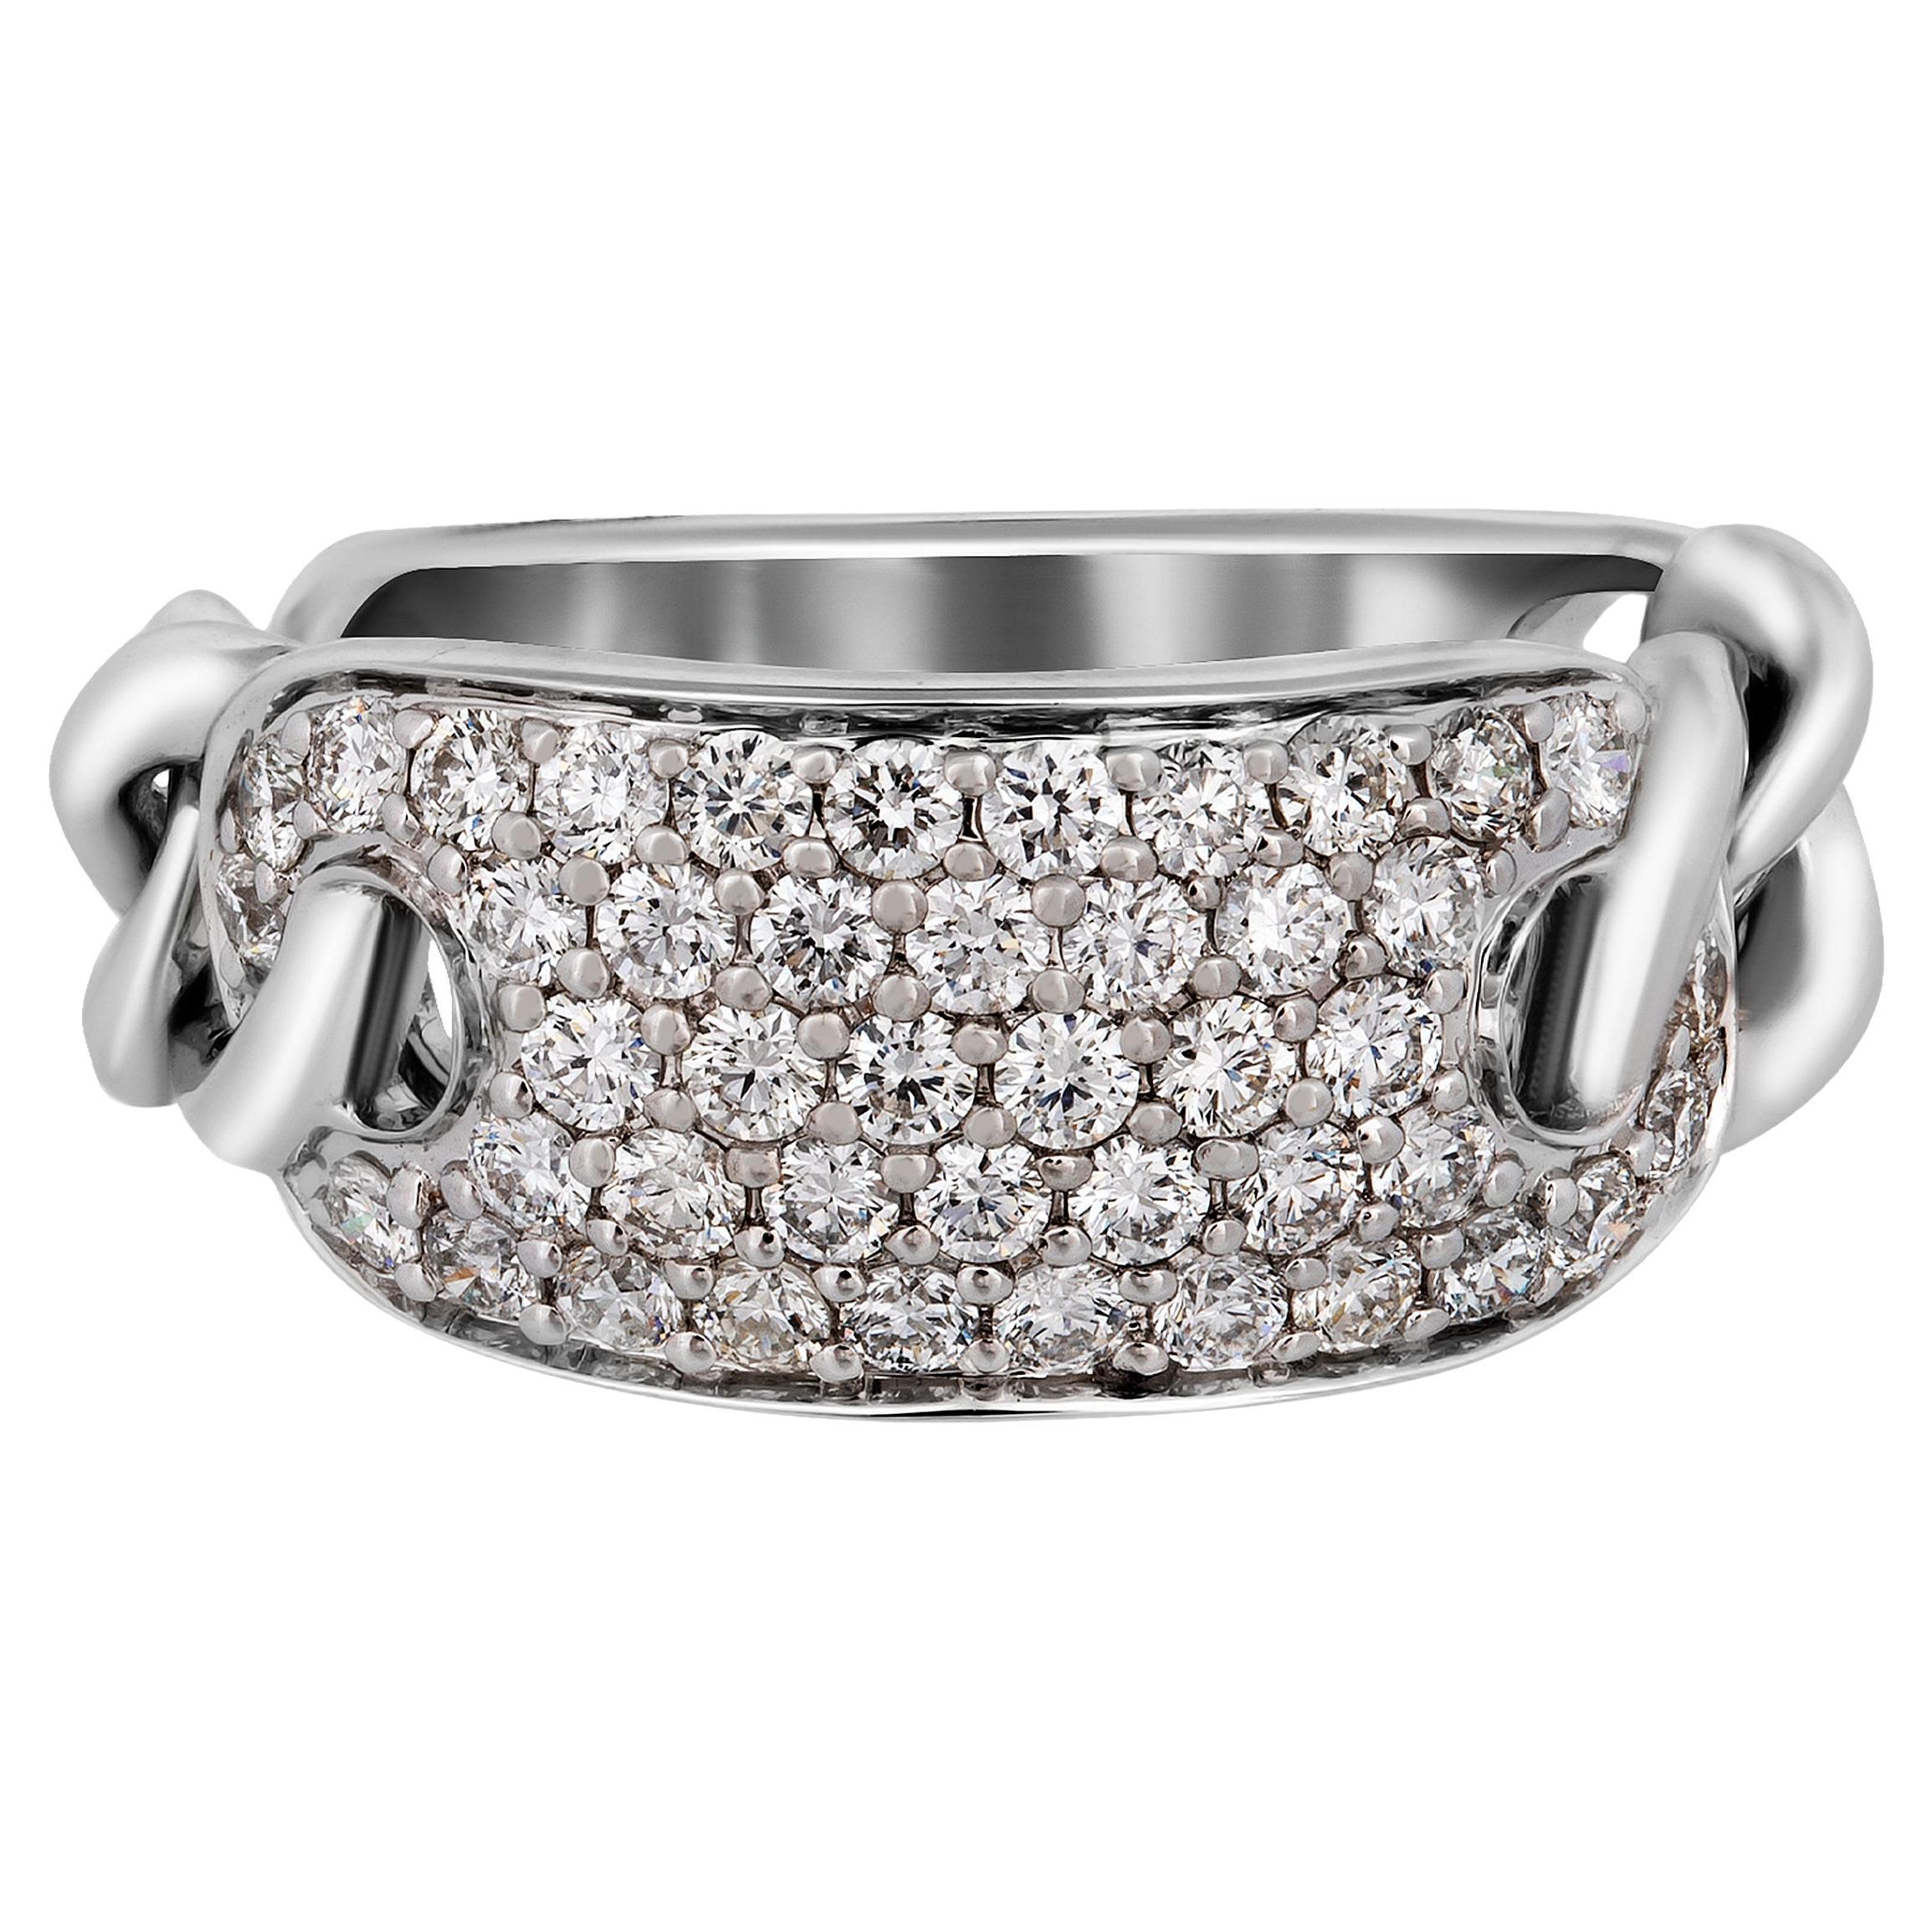 Piero Milano 18K White Gold Diamond Ring Sz 6.25 For Sale